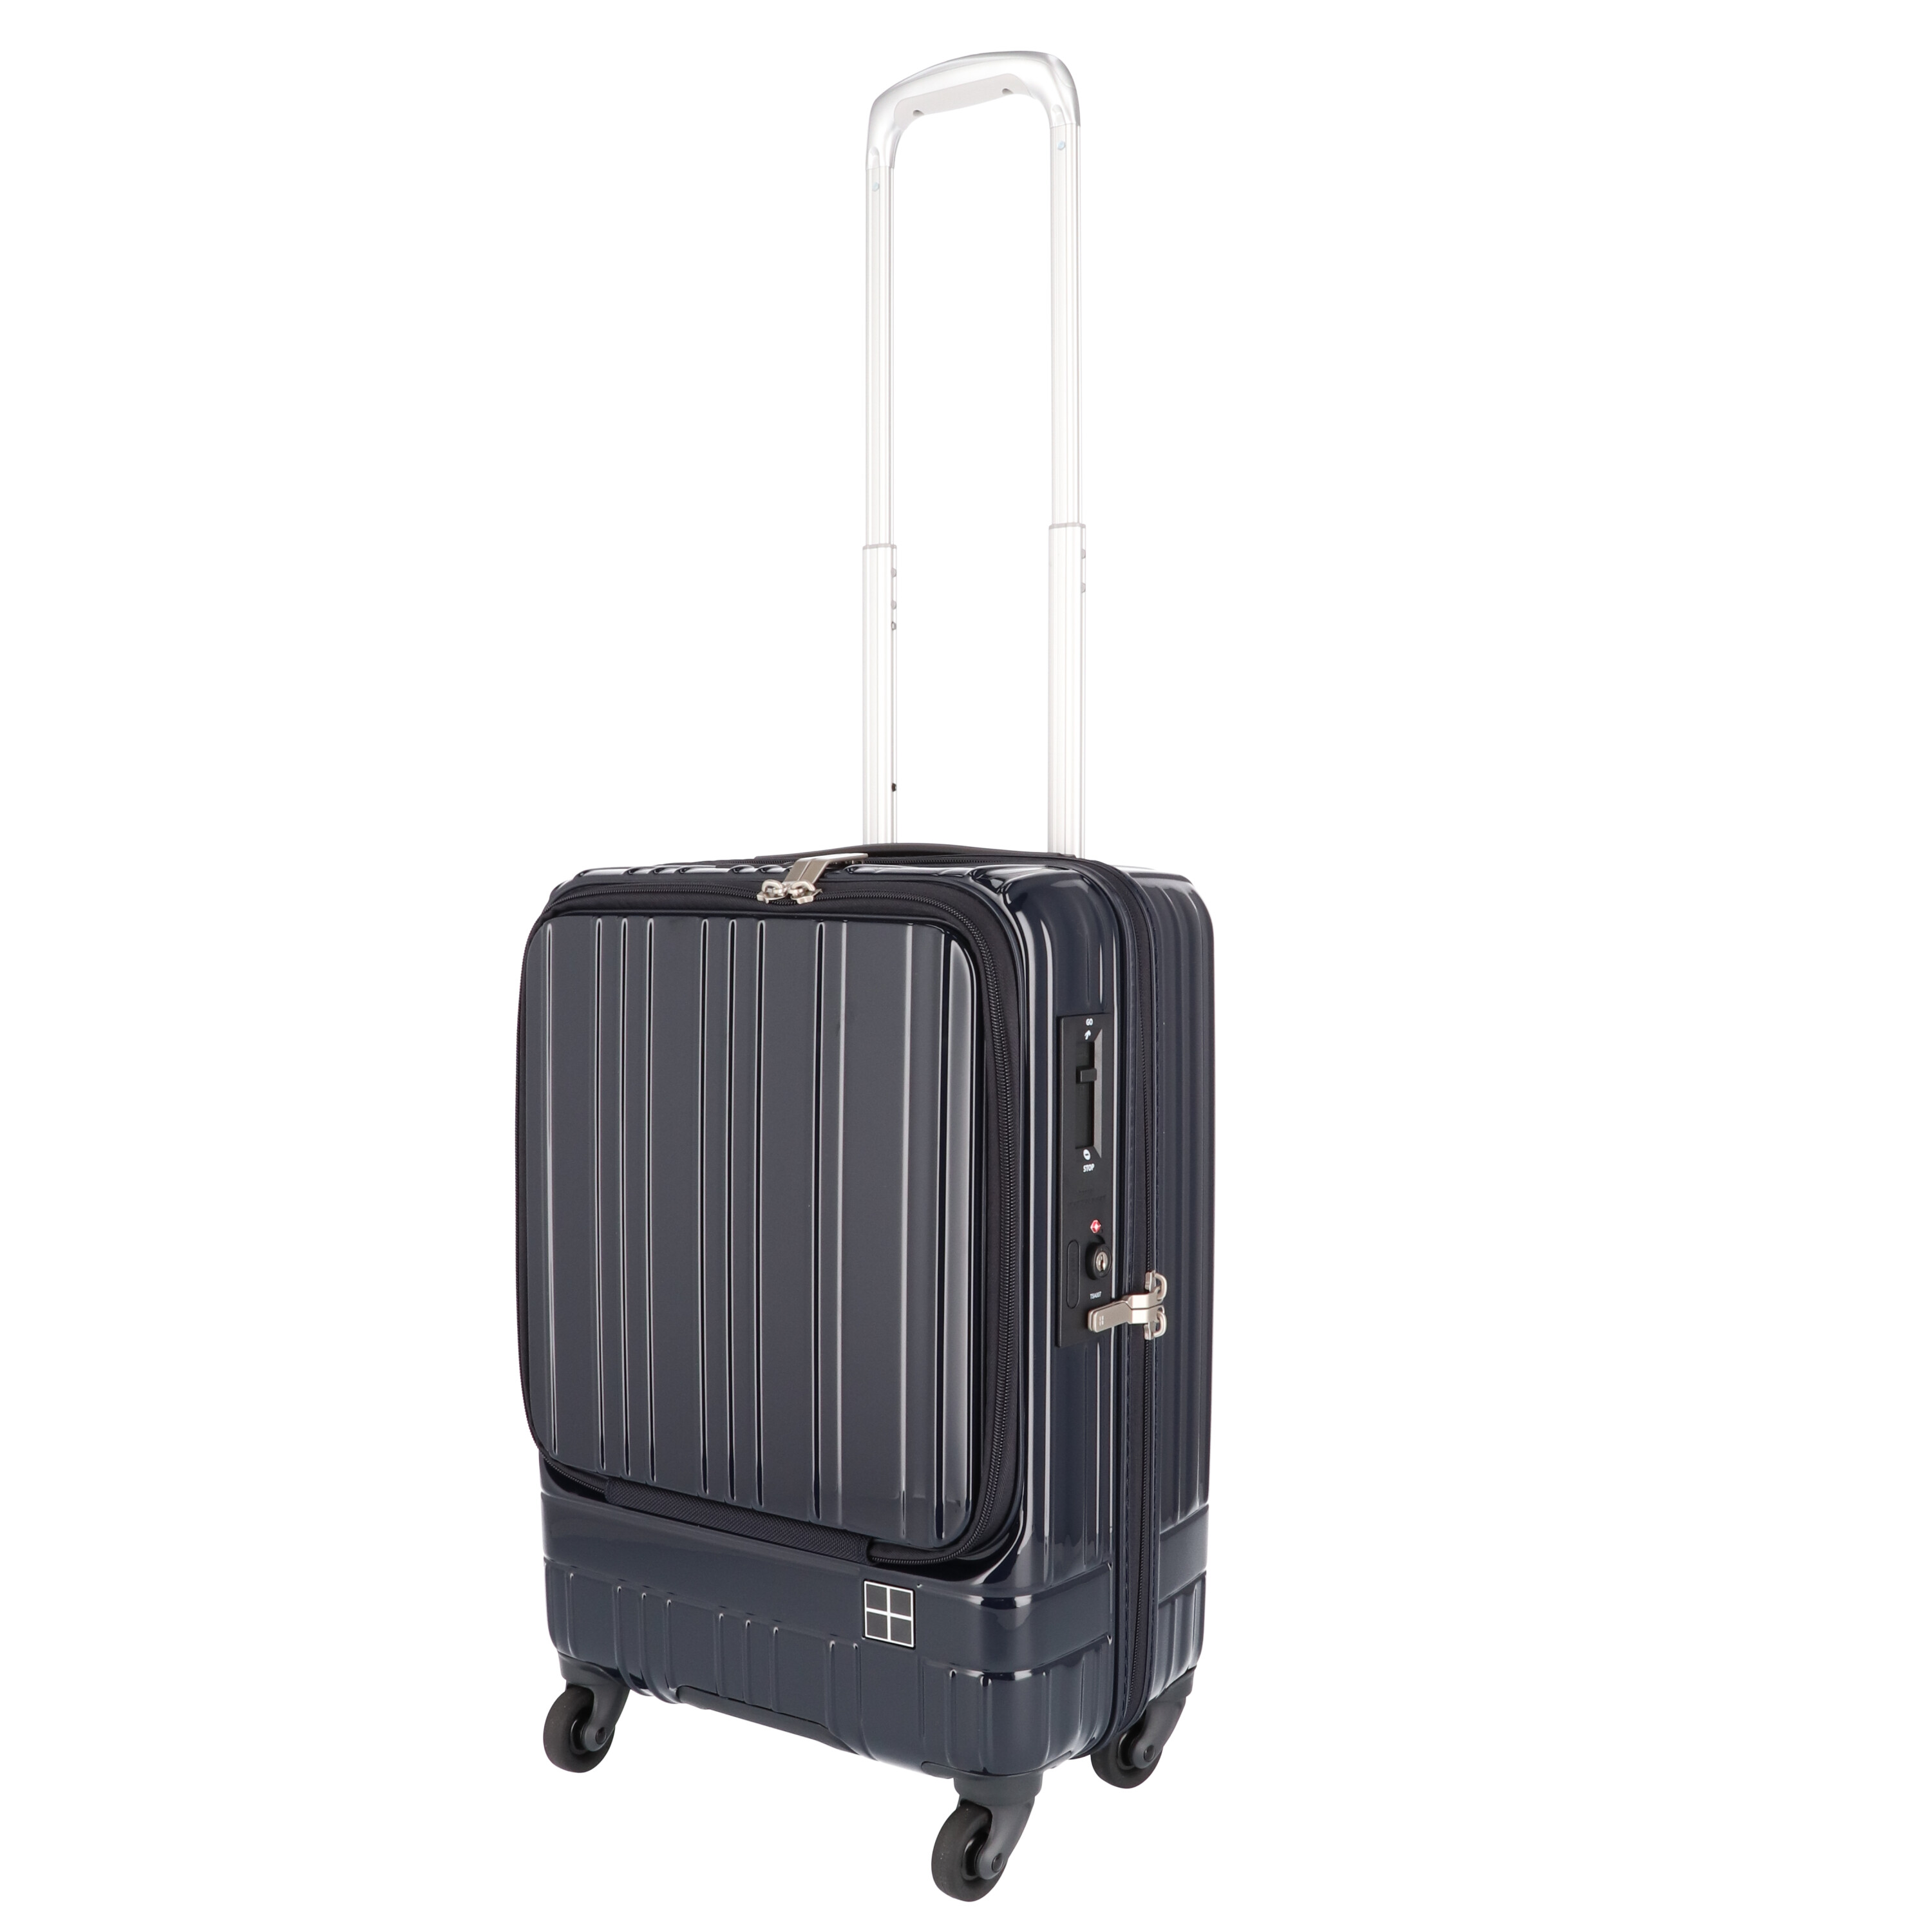 スーツケース フ Sサイズ 機内持込ロントオープンUSBポート付きストッパー付き